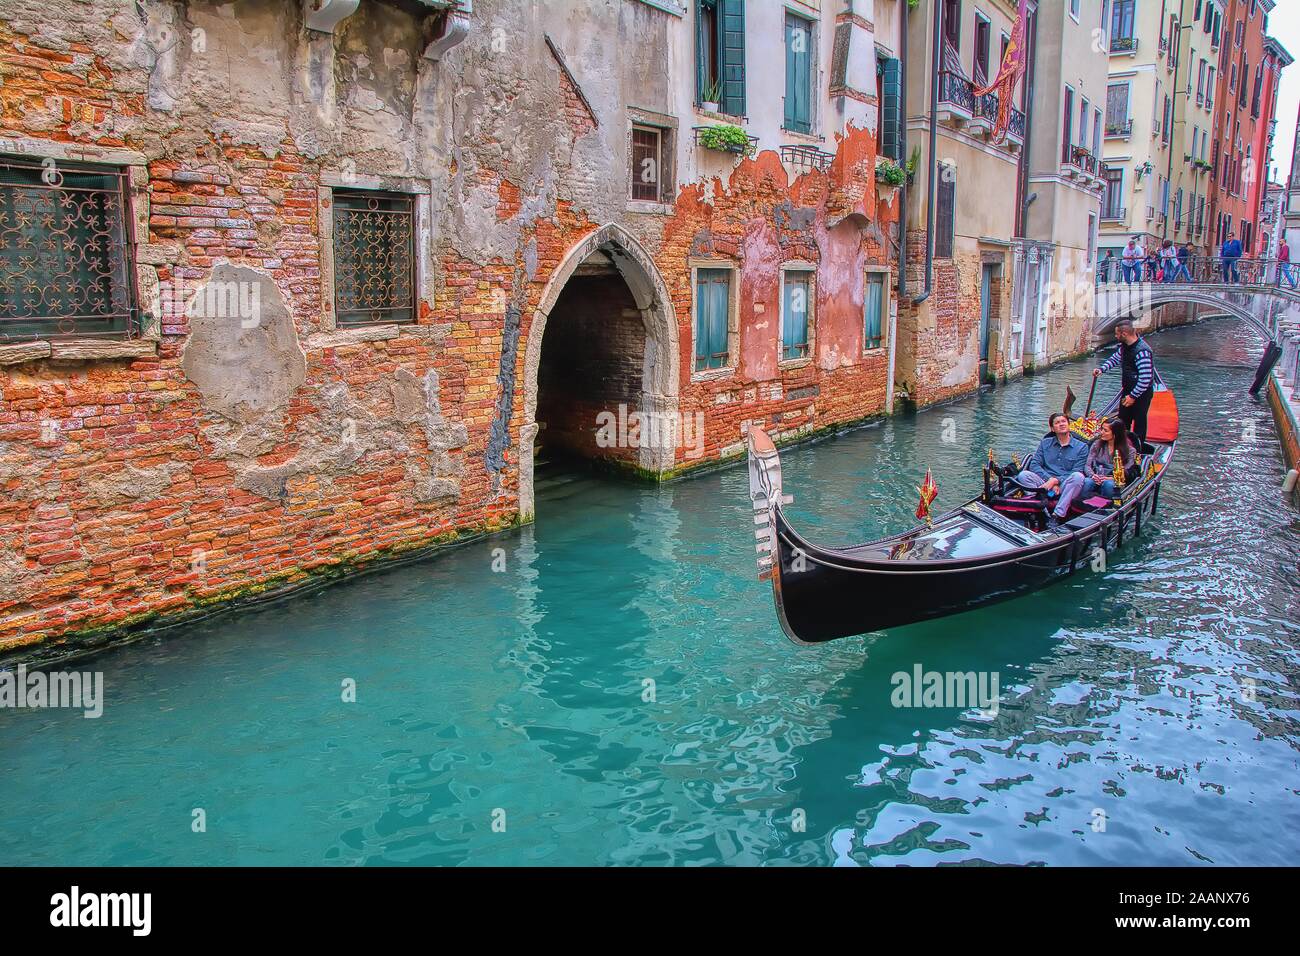 Venedig, Italien, 10. Oktober 2019: Touristen reisen auf der Gondel am Kanal in Venedig, Italien. Gondelfahrt ist die beliebteste touristische Aktivität in Venedig. Stockfoto